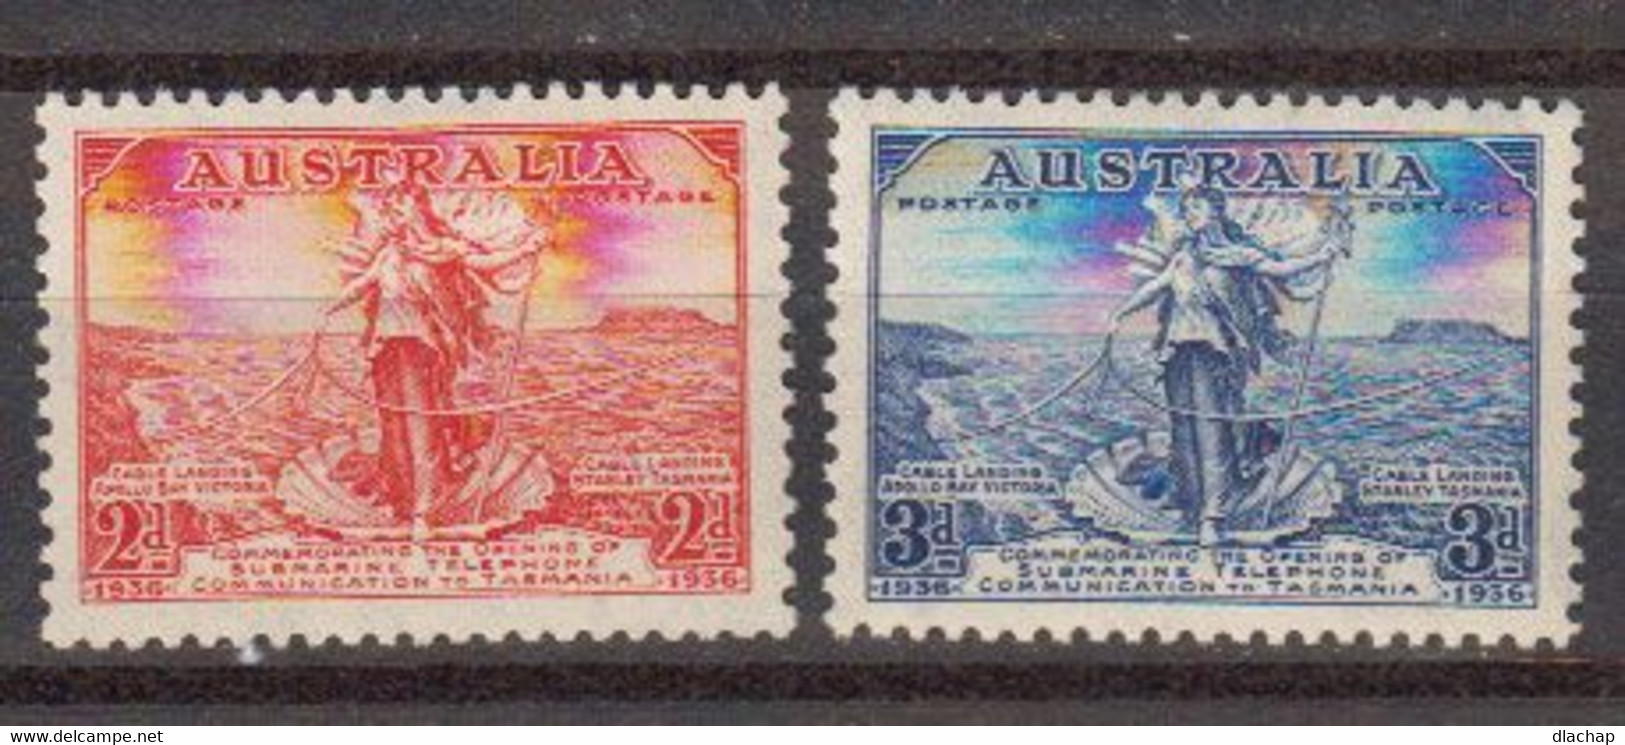 Australie 1936 Yvert 105 / 106 * Neufs Avec Charniere. Inauguration Du Cable Tel. Entre La Tasmanie Et L'Australie - Mint Stamps